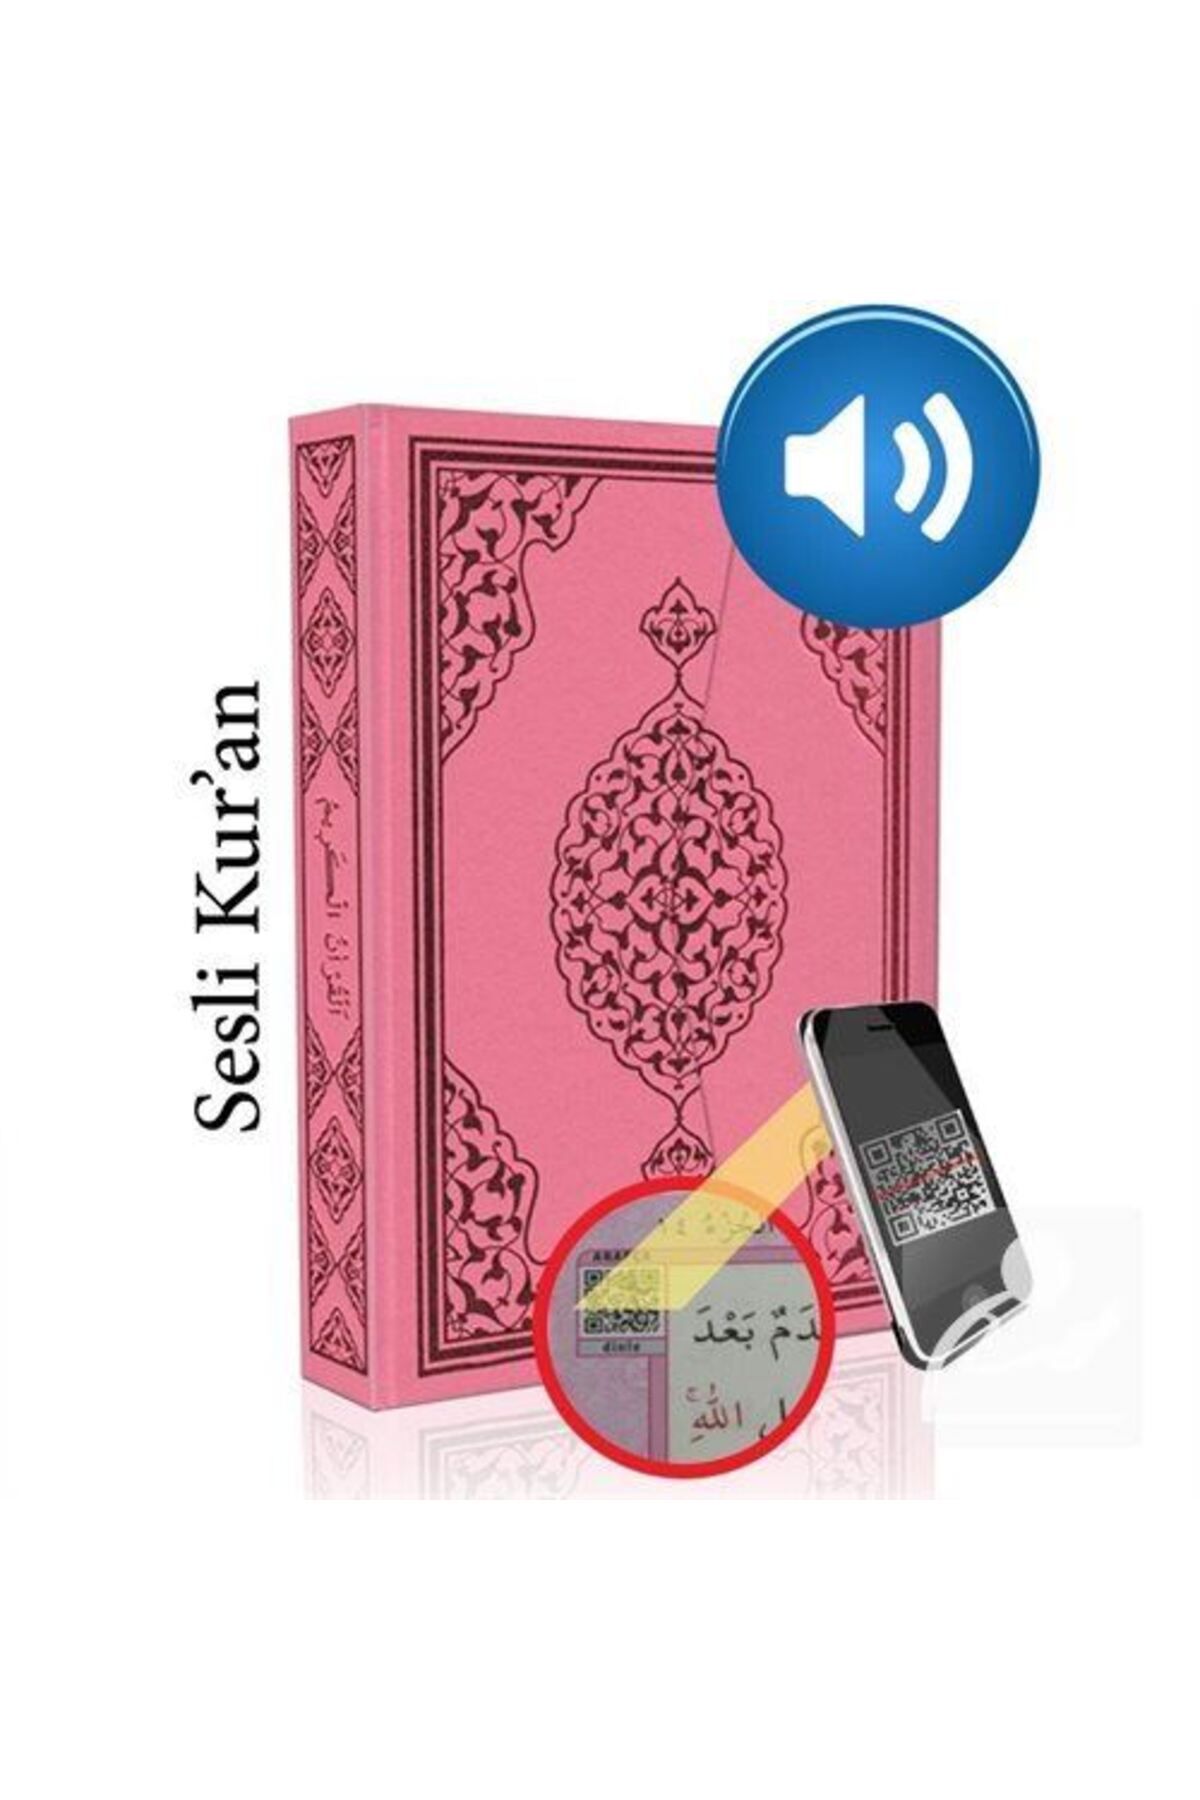 Merve Yayınları Kur'an-ı Kerim Bilgisayar Hatlı Pembe Renk Orta Boy (KUR-AN 014) Sesli Kur-an & Diyanet Mühürlüdür